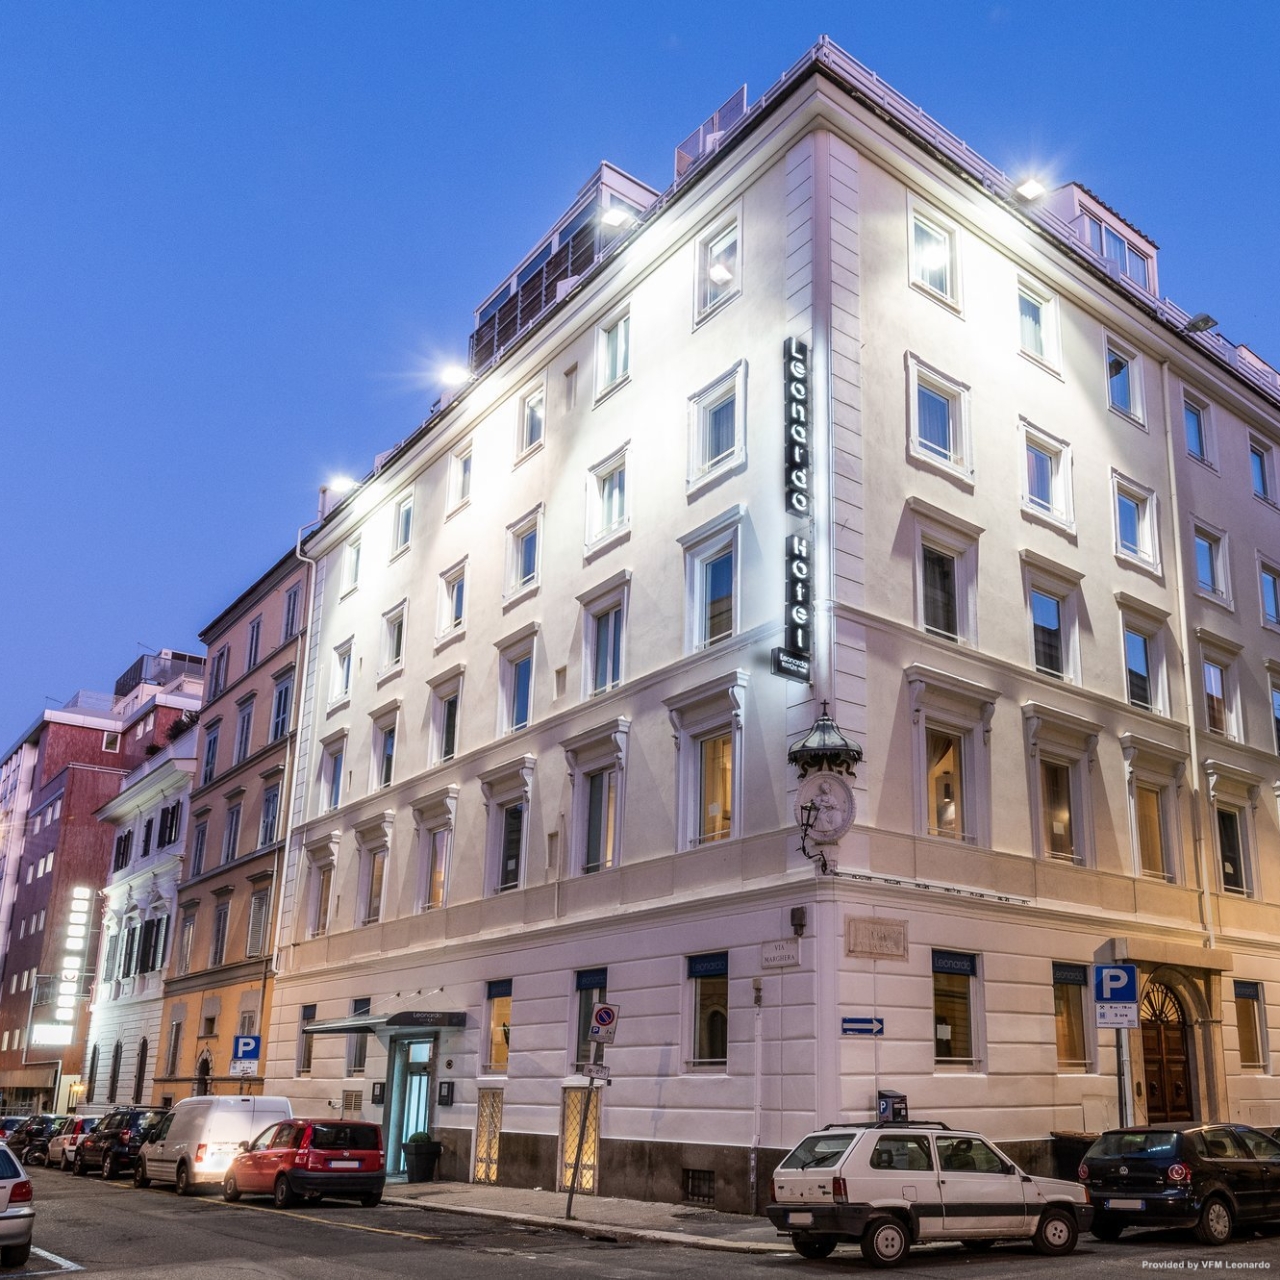 Hotel Venetia Palace - 4 HRS star hotel in Rome (Lazio)